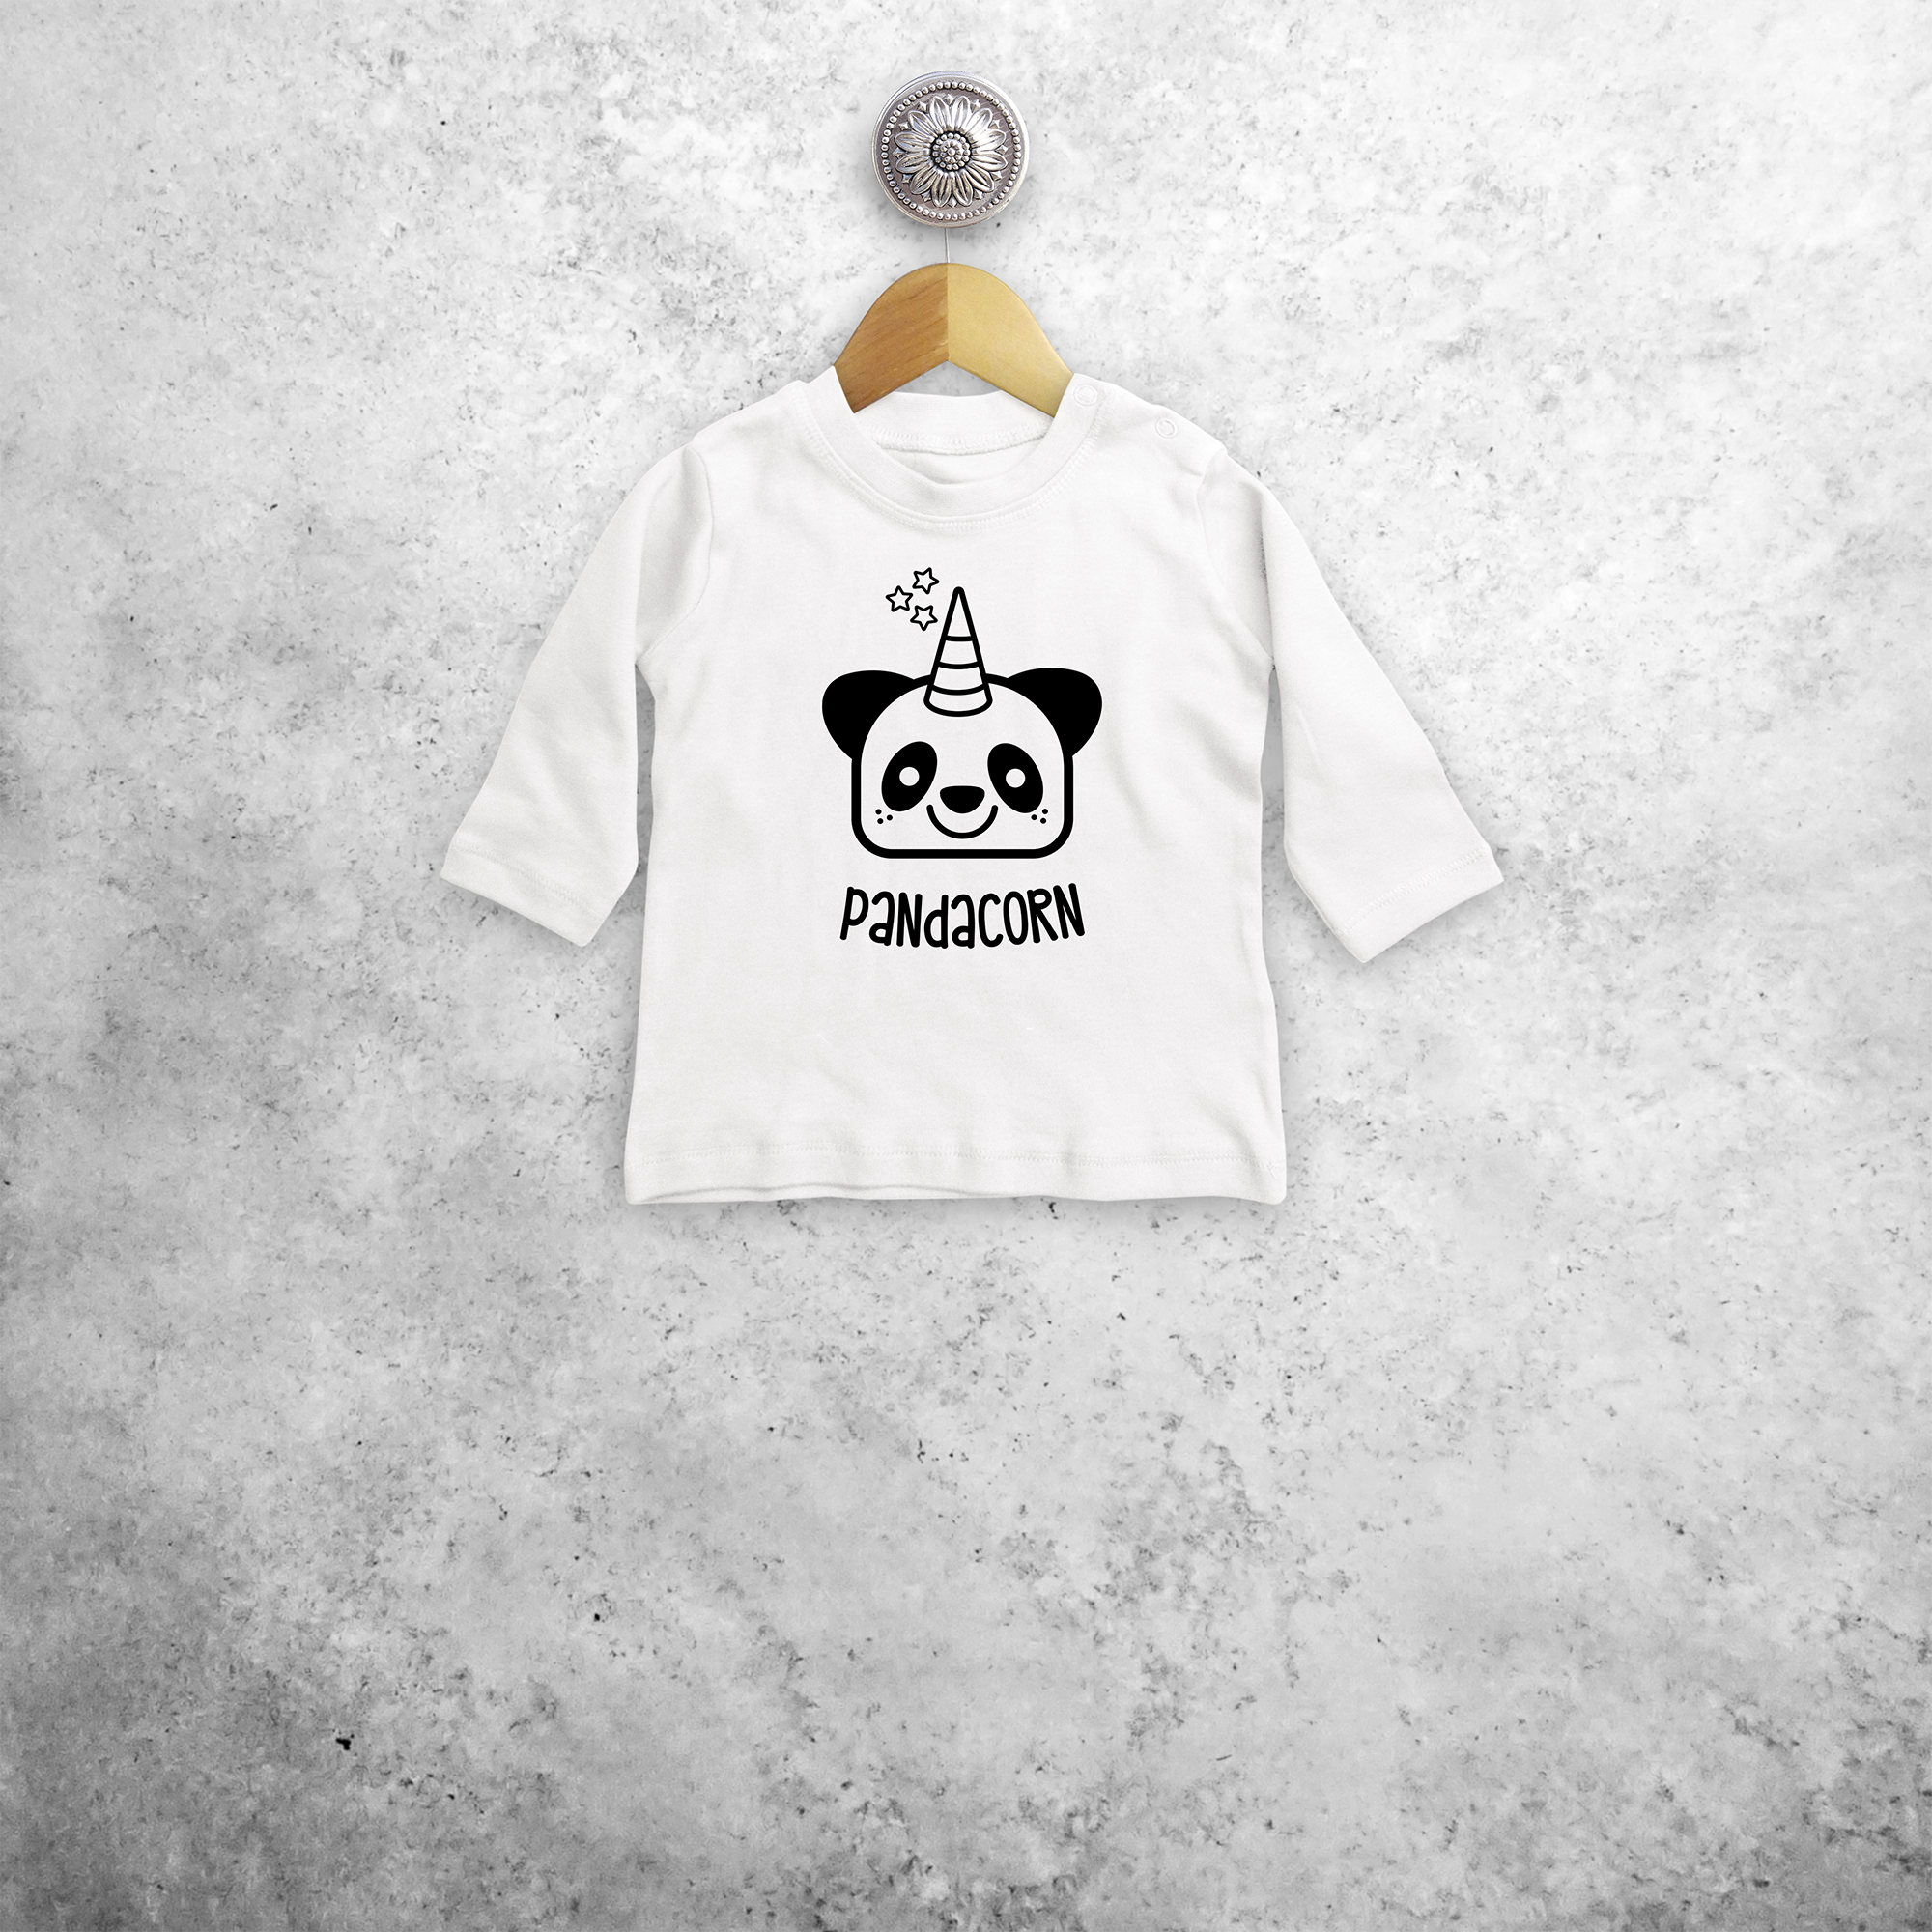 Pandacorn baby longsleeve shirt